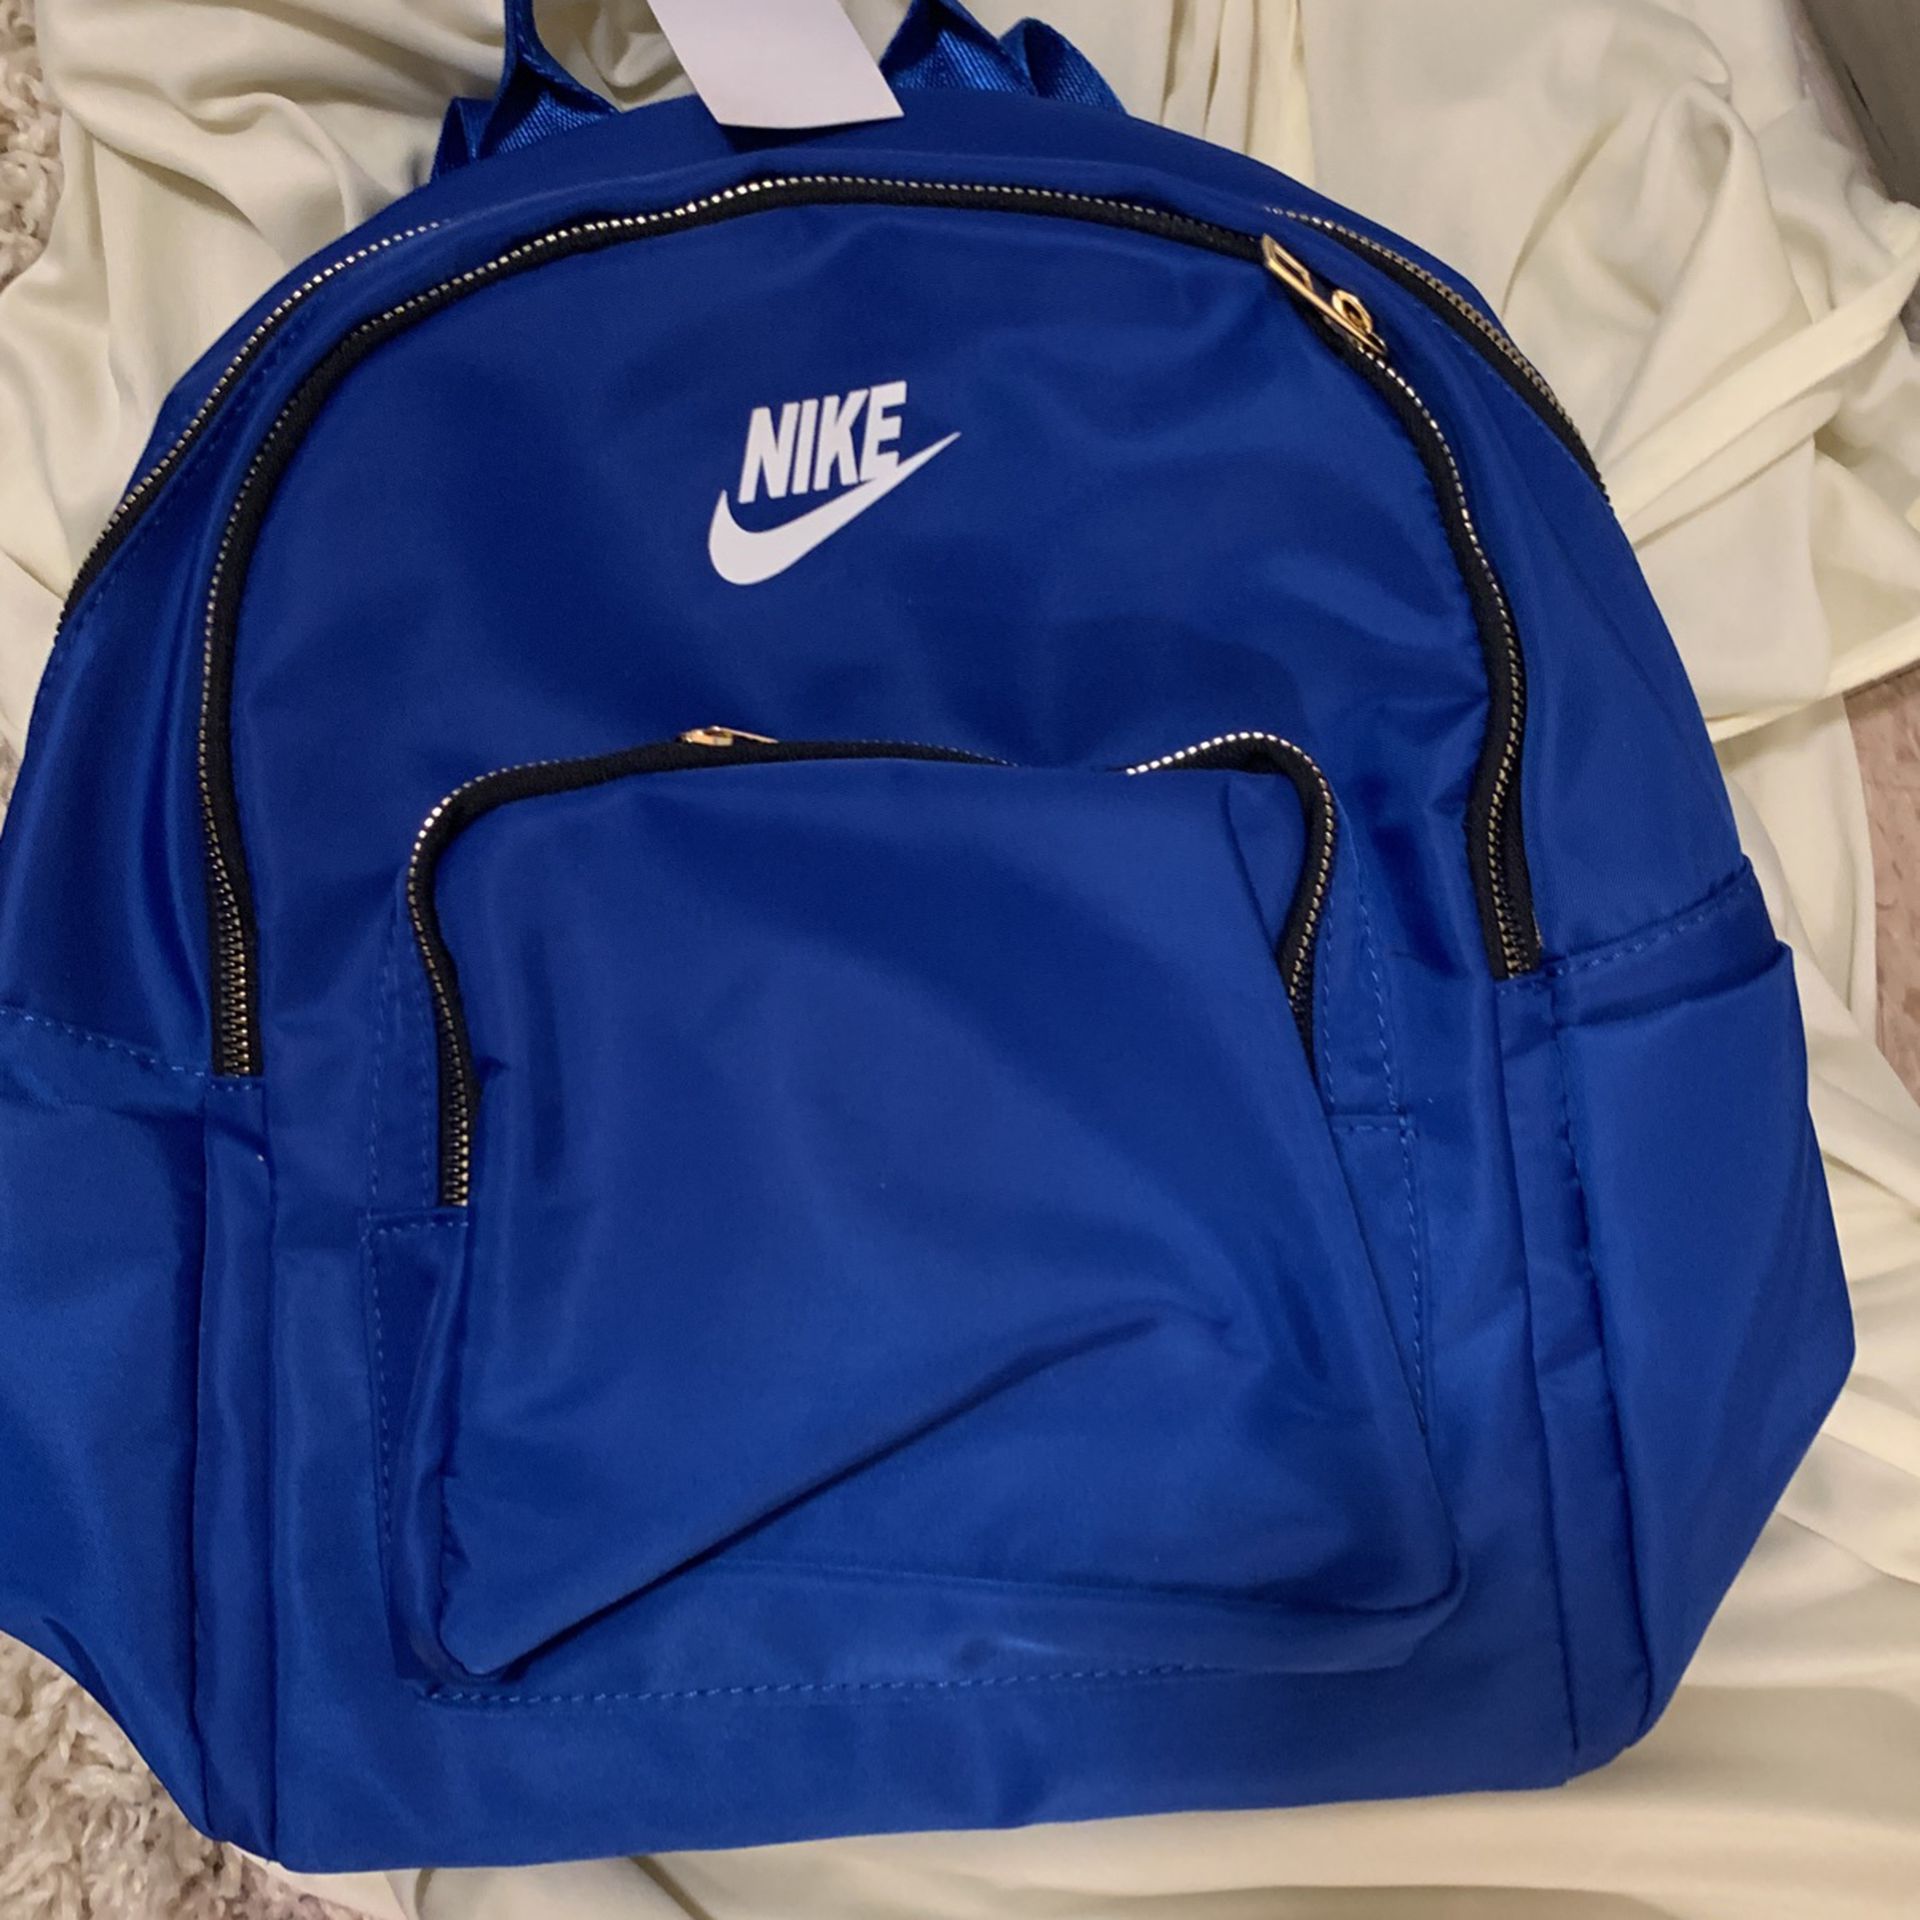 New Woman Nike Backpack 